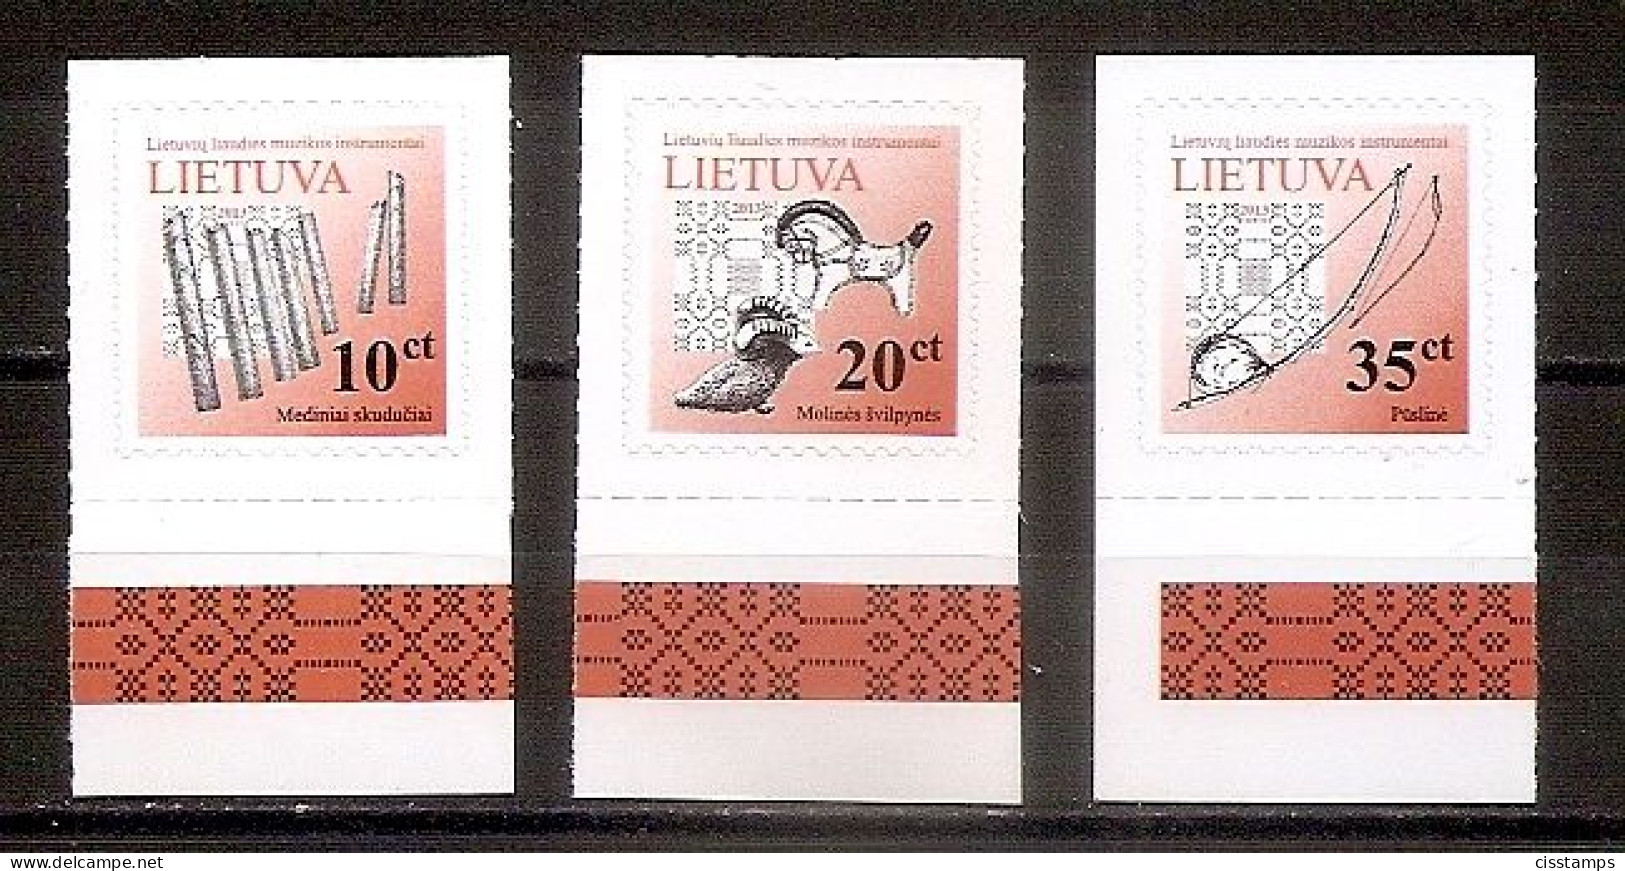 LITHUANIA 2013●Lithuanian Folk Music Instruments Mi 1087II-89II●MNH - Lithuania